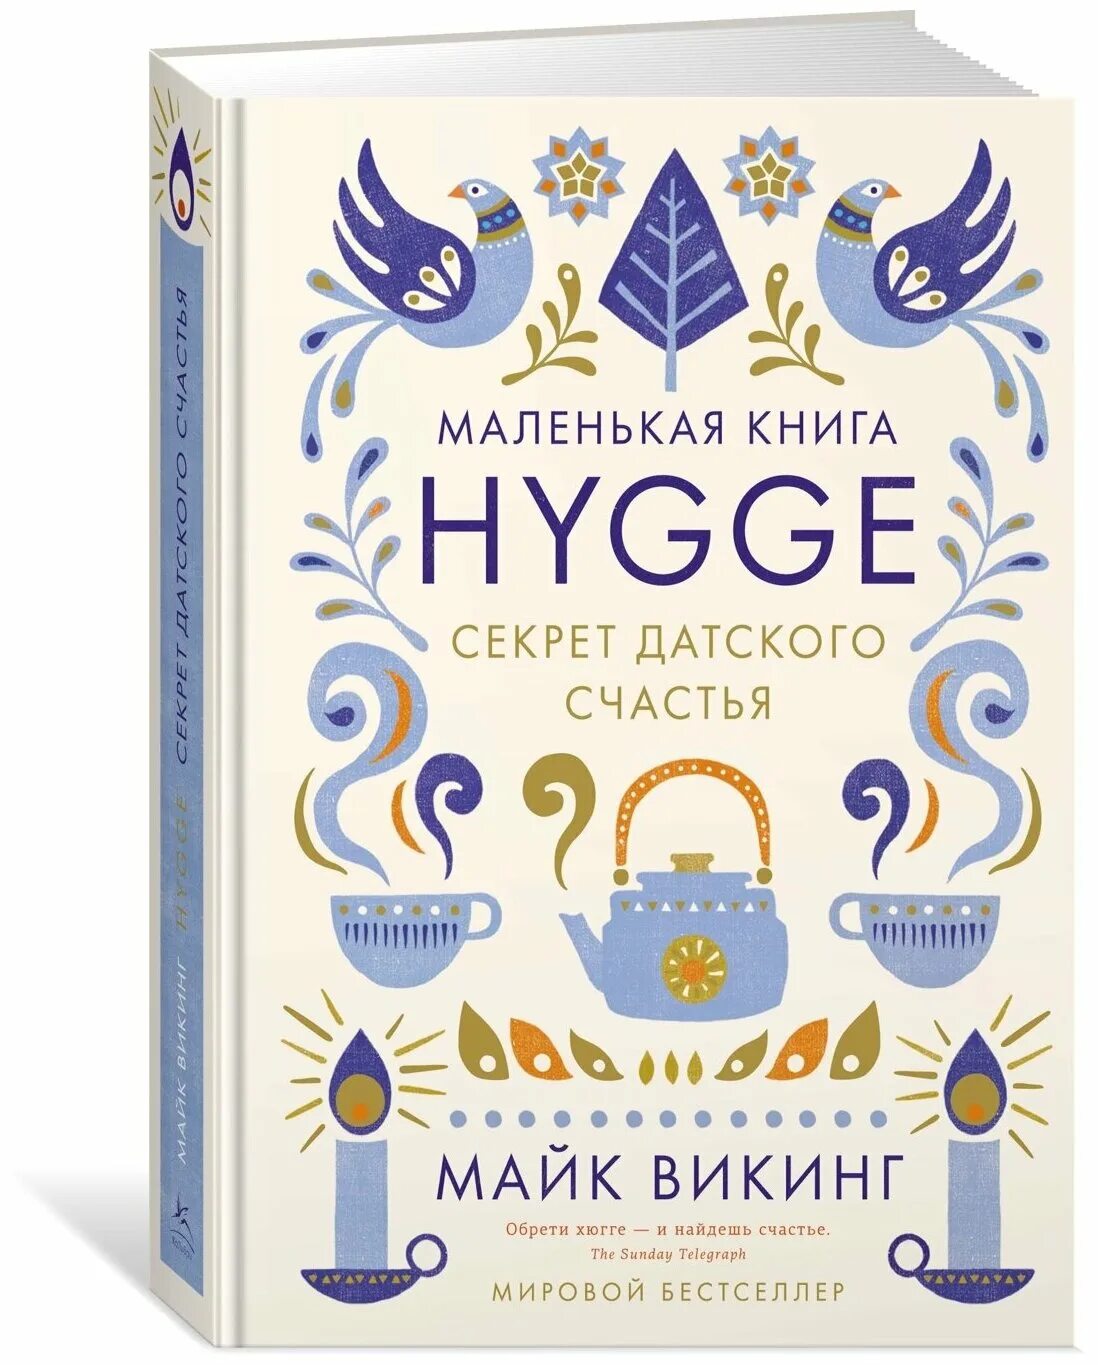 Счастье по хюгге. Hygge. Секрет датского счастья. Майк Викинг секрет датского счастья. Майк Викинг Hygge секрет. Книга Hygge секрет датского счастья.